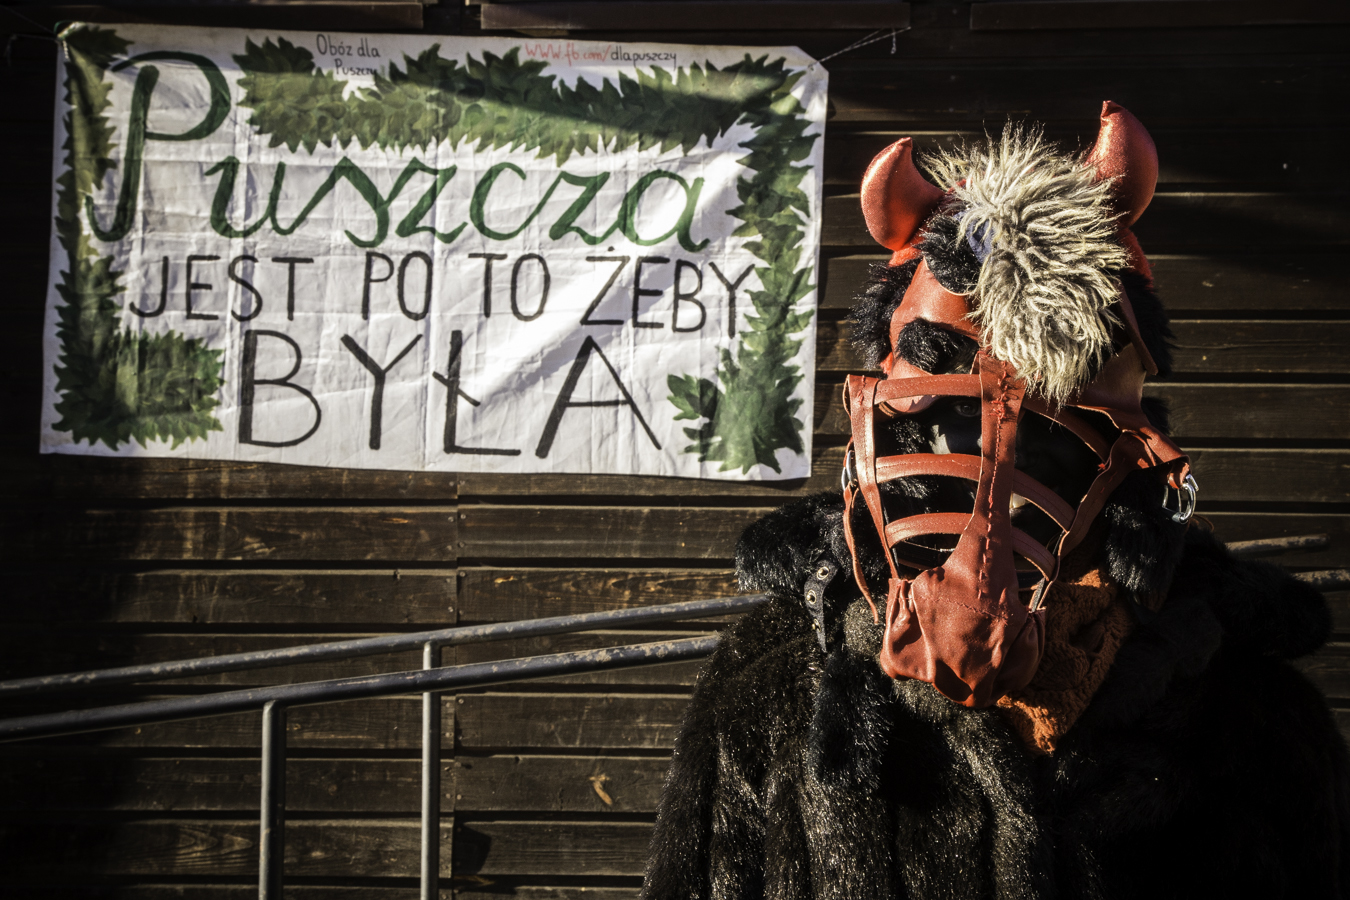 Diabeł pod budynkiem starej szkoły w Teremiskach na tle napisu Puszcza jest po to, żeby była.